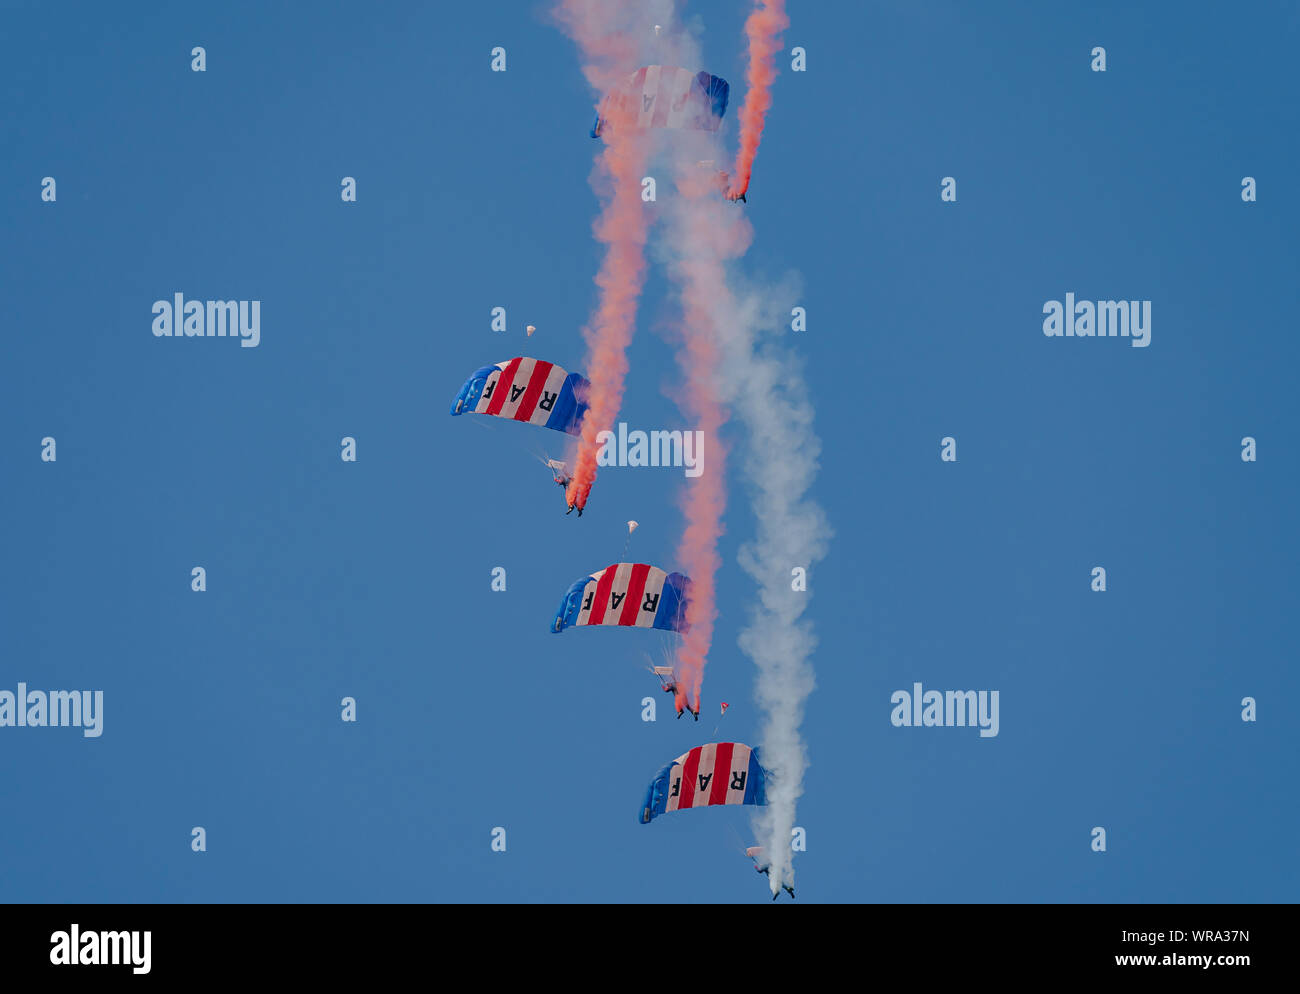 RAF Falken Fallschirm display Team Stockfoto